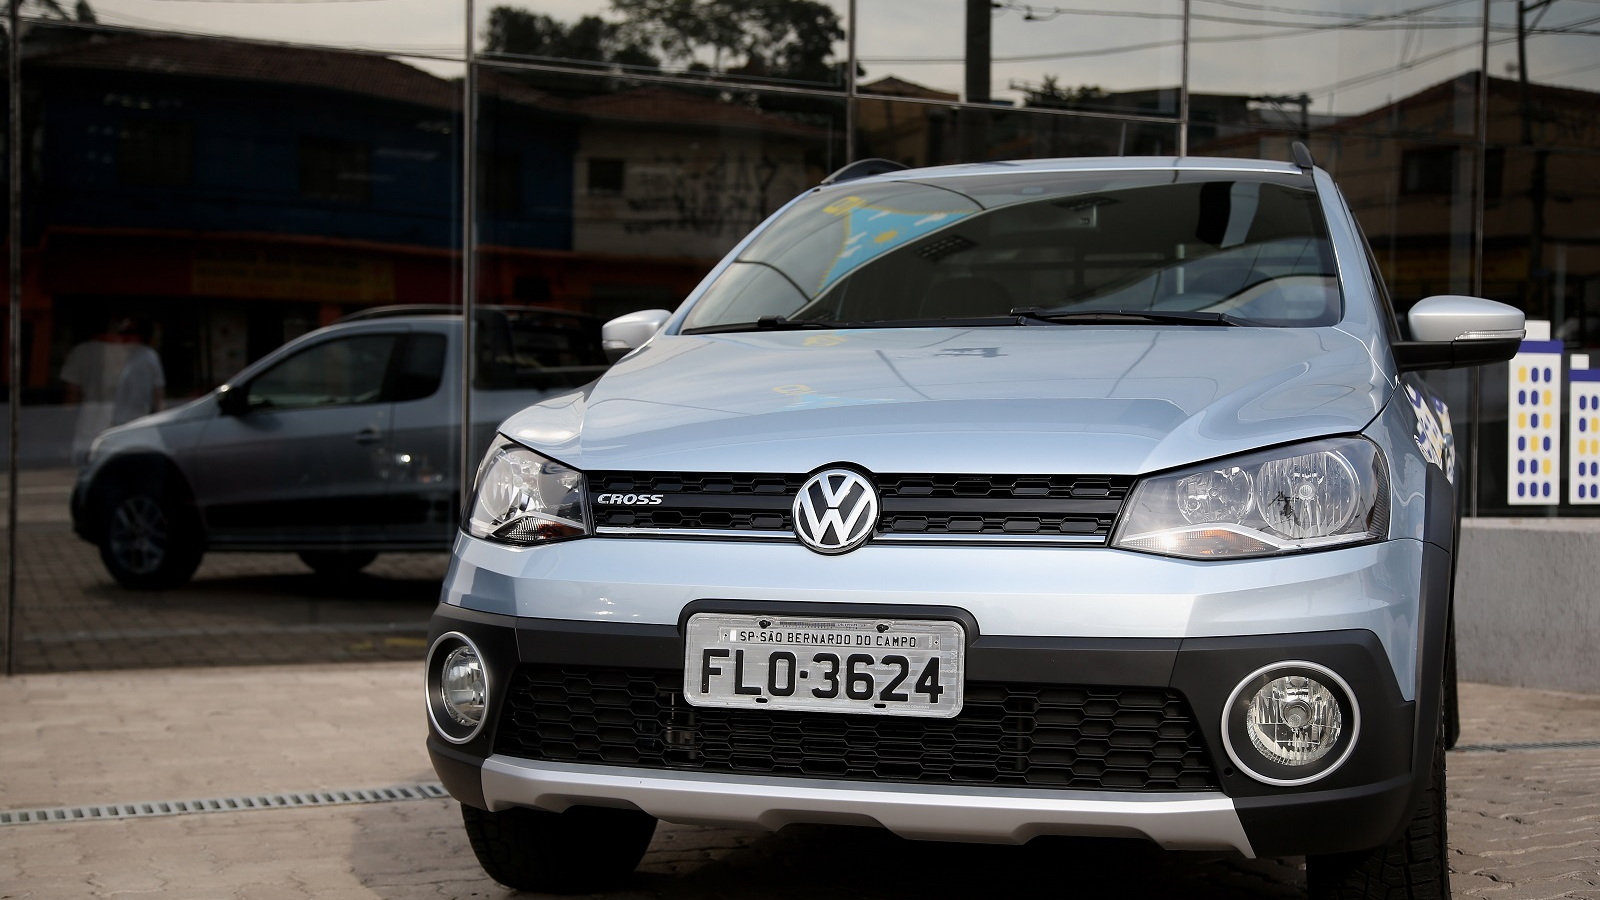 Volkswagen Saveiro, Brazilian flex-fuel vehicle